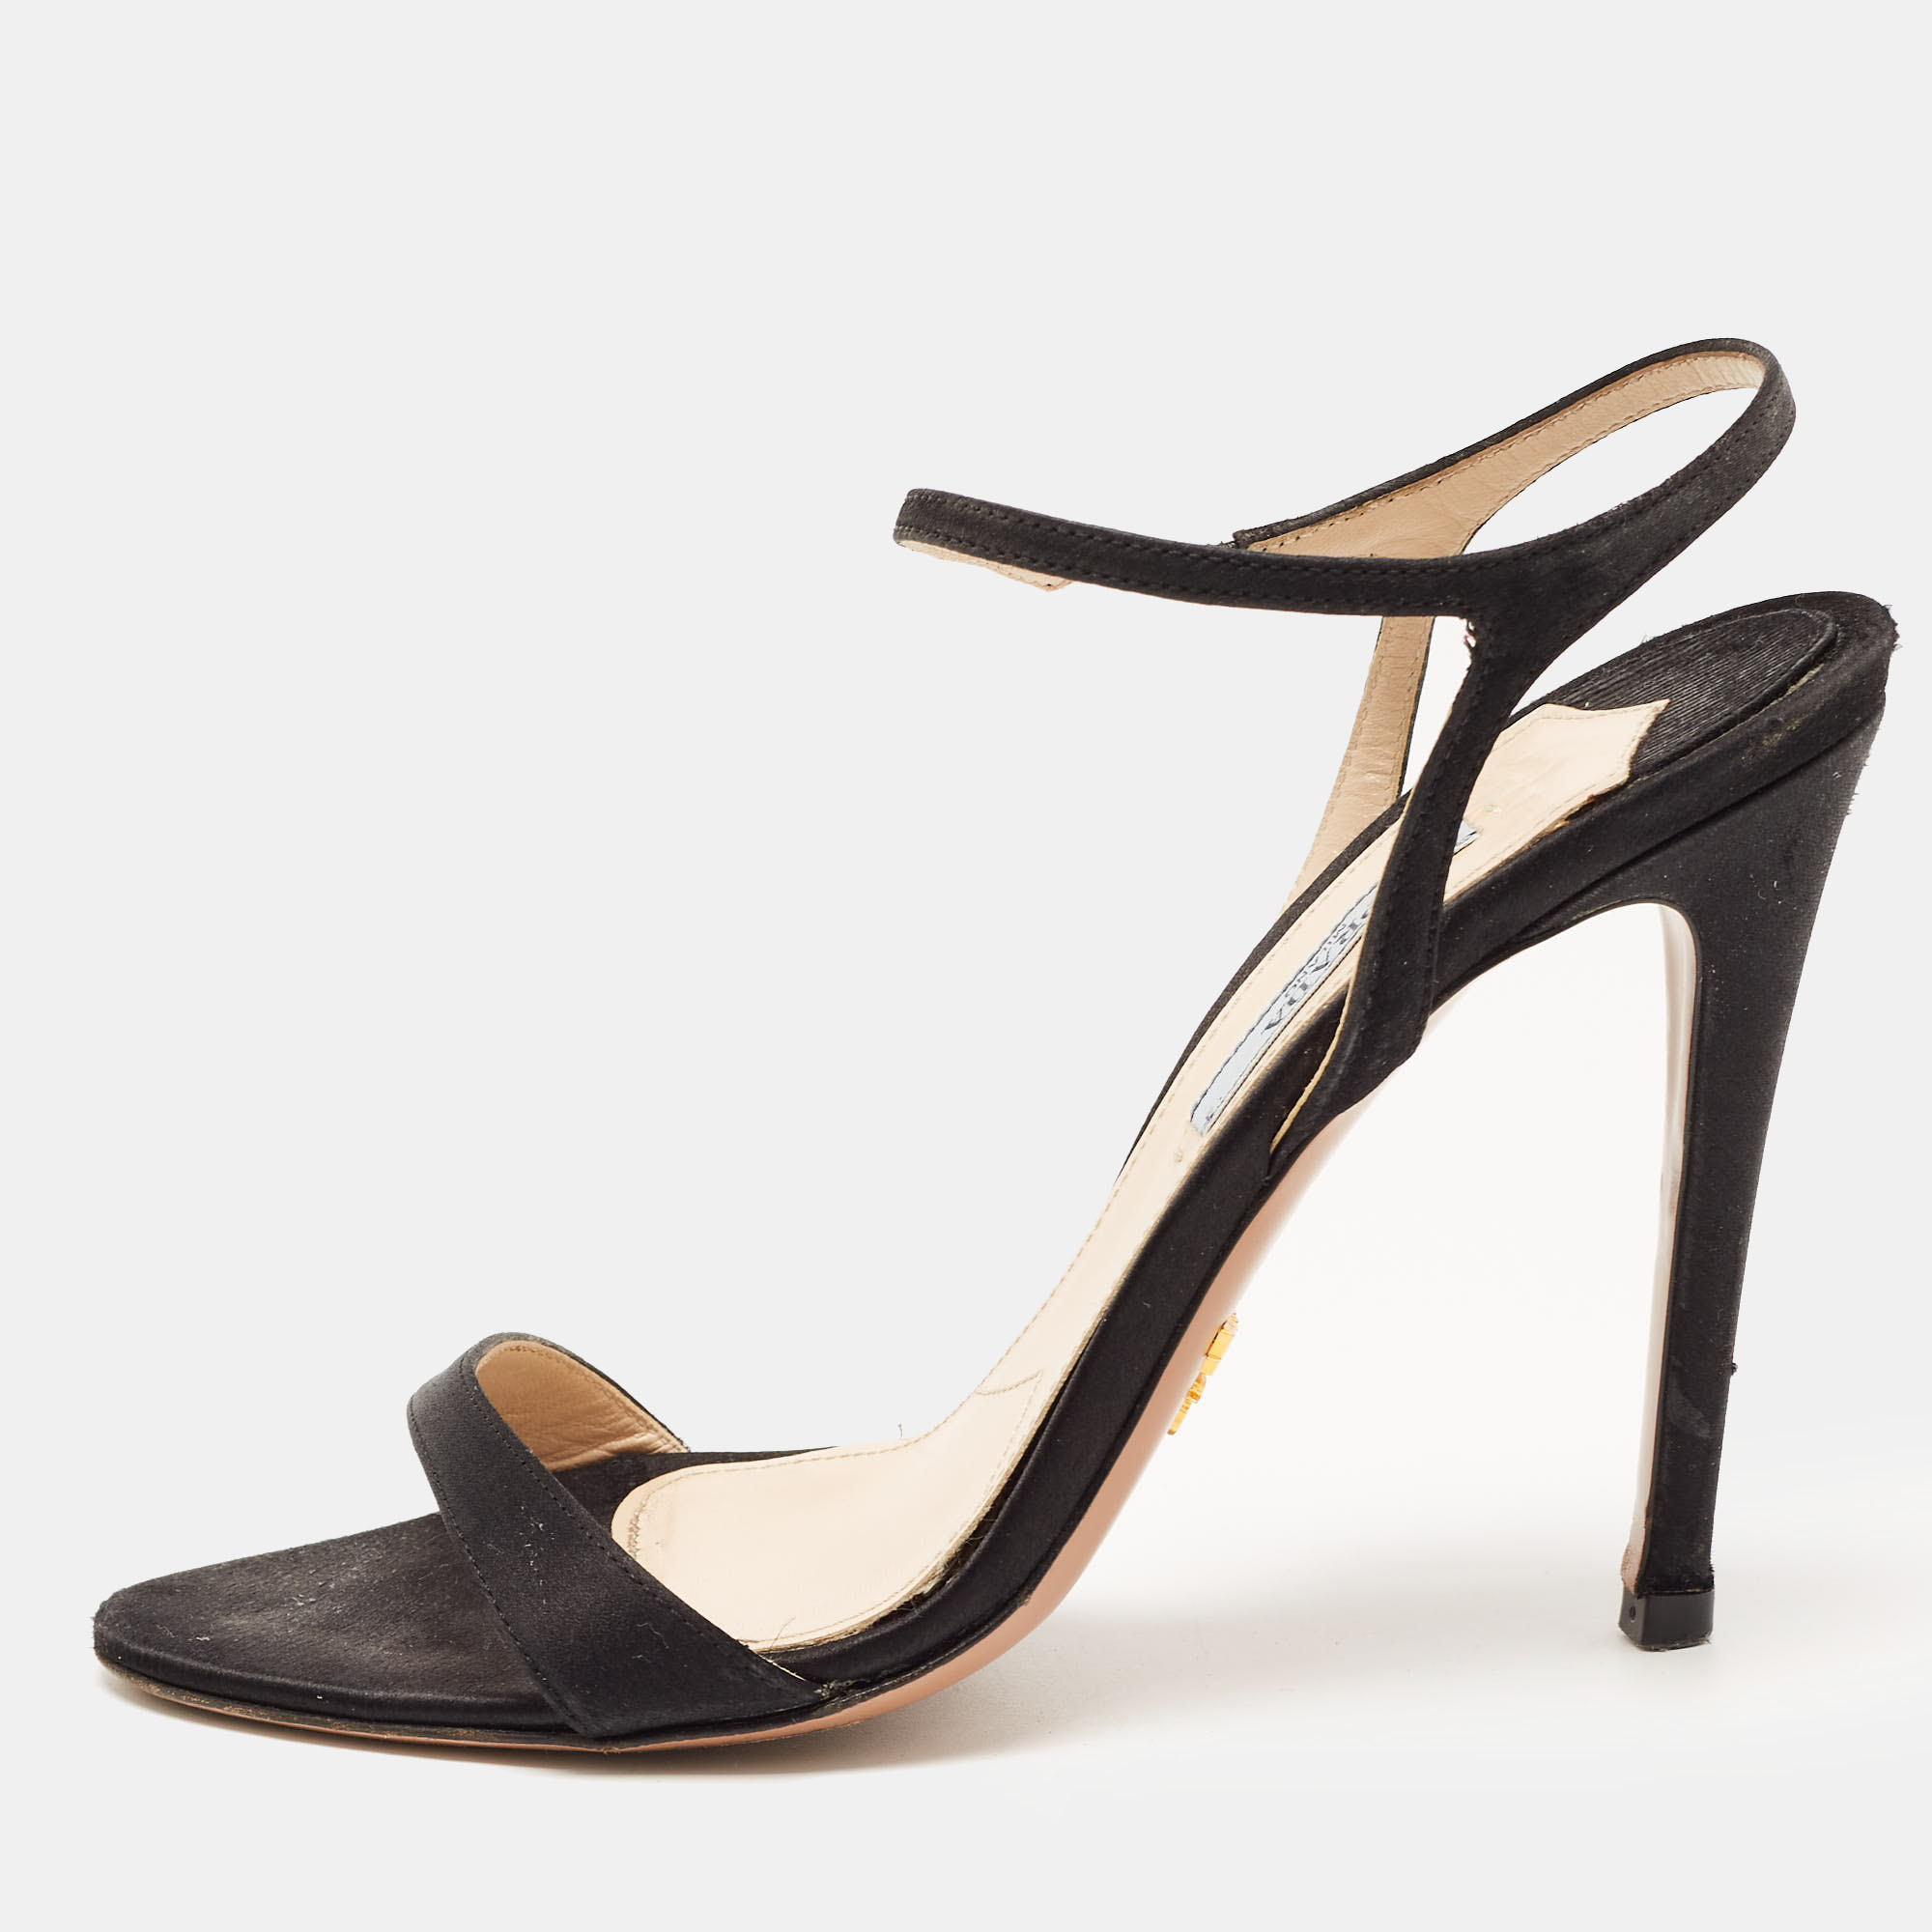 Prada Black Satin Ankle Strap Sandals Size 37.5